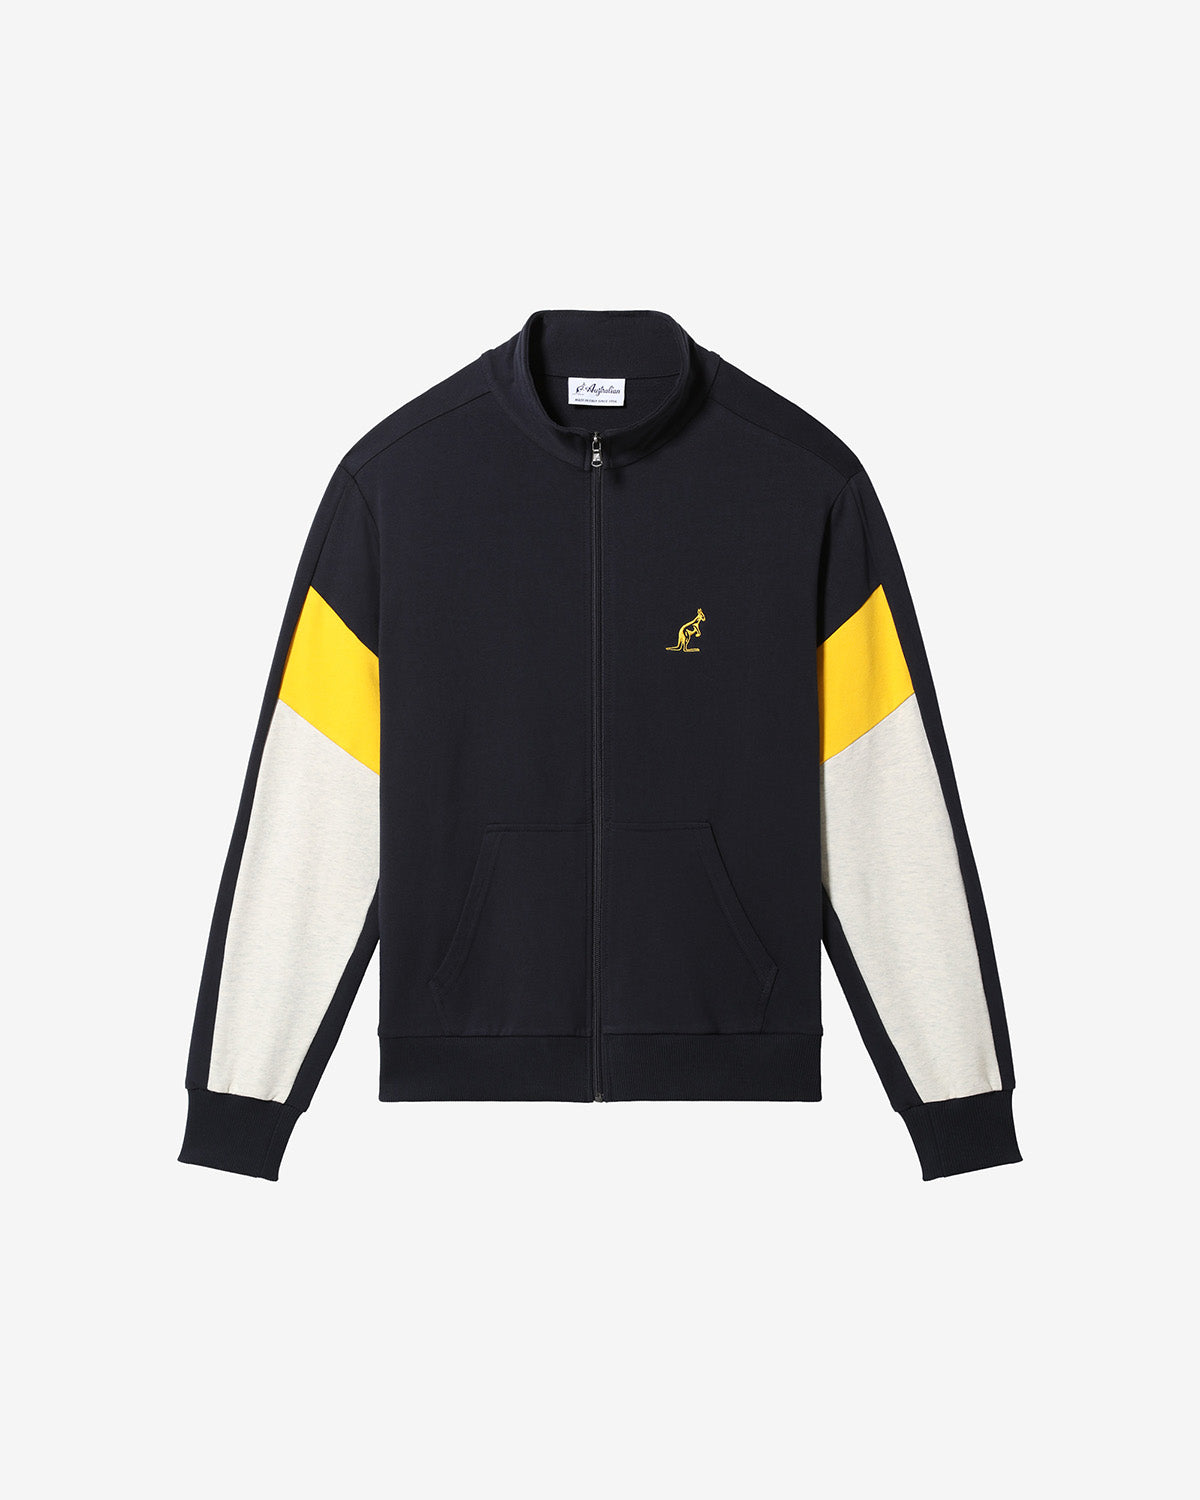 Icon Track Jacket: Australian Sportswear